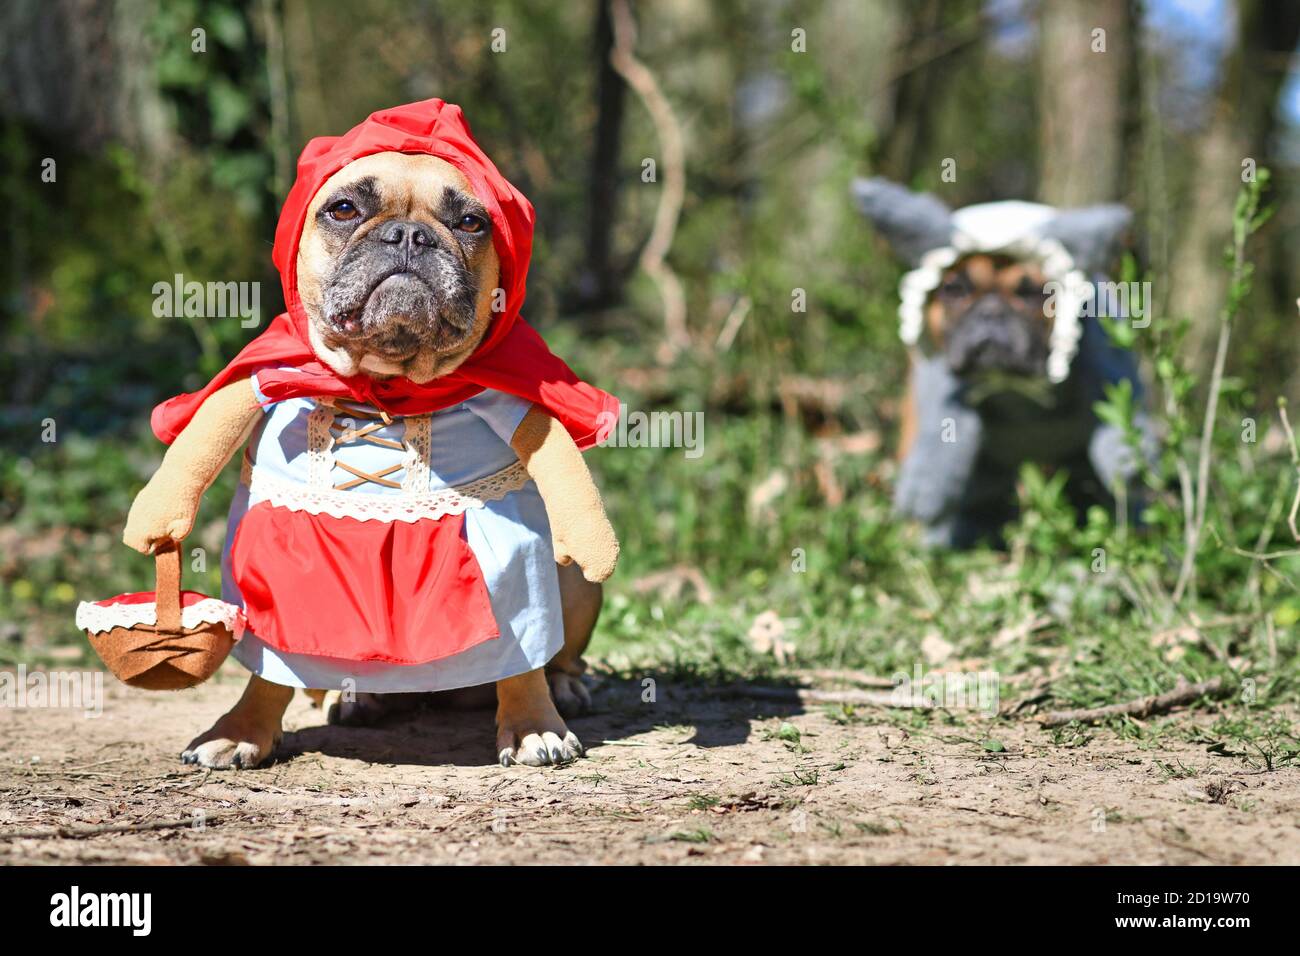 Lustige französische Bulldogge Hunde verkleidet mit Halloween Kostüm als  Märchenfigur Rotkäppchen mit gefälschten Waffen und Korb mit großem bösen  Wolf Stockfotografie - Alamy